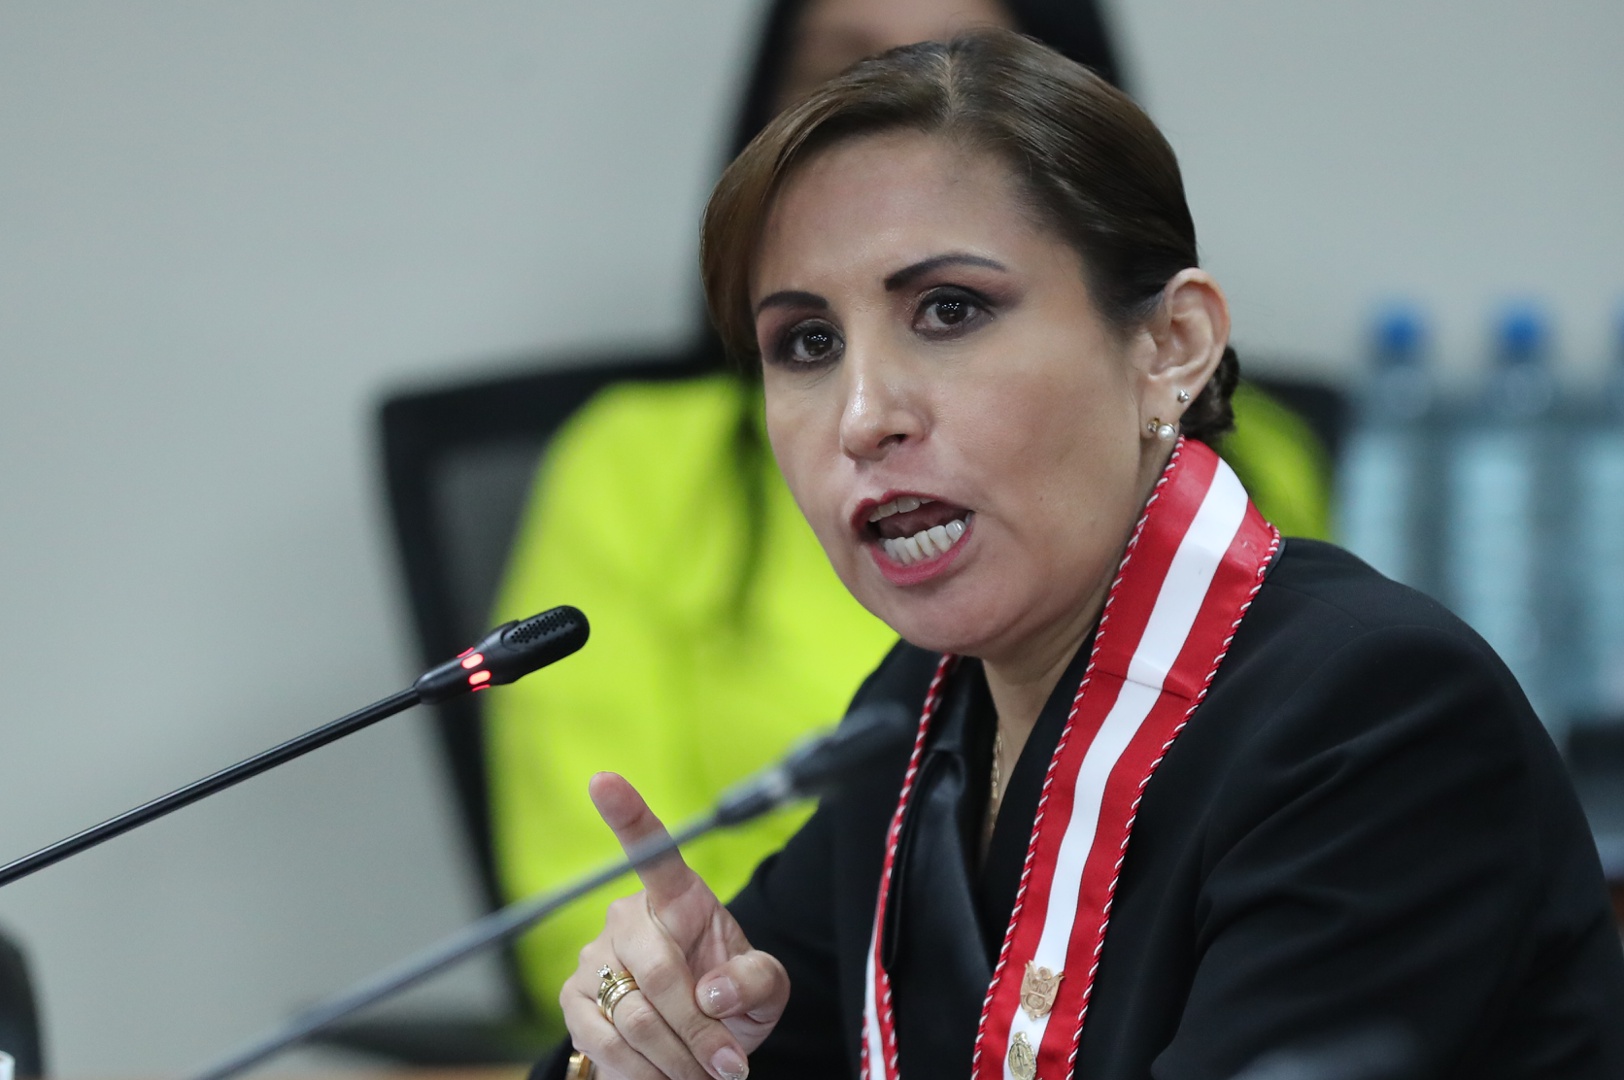 la suspendida fiscal general de perú afirma que se busca destituirla por motivos políticos